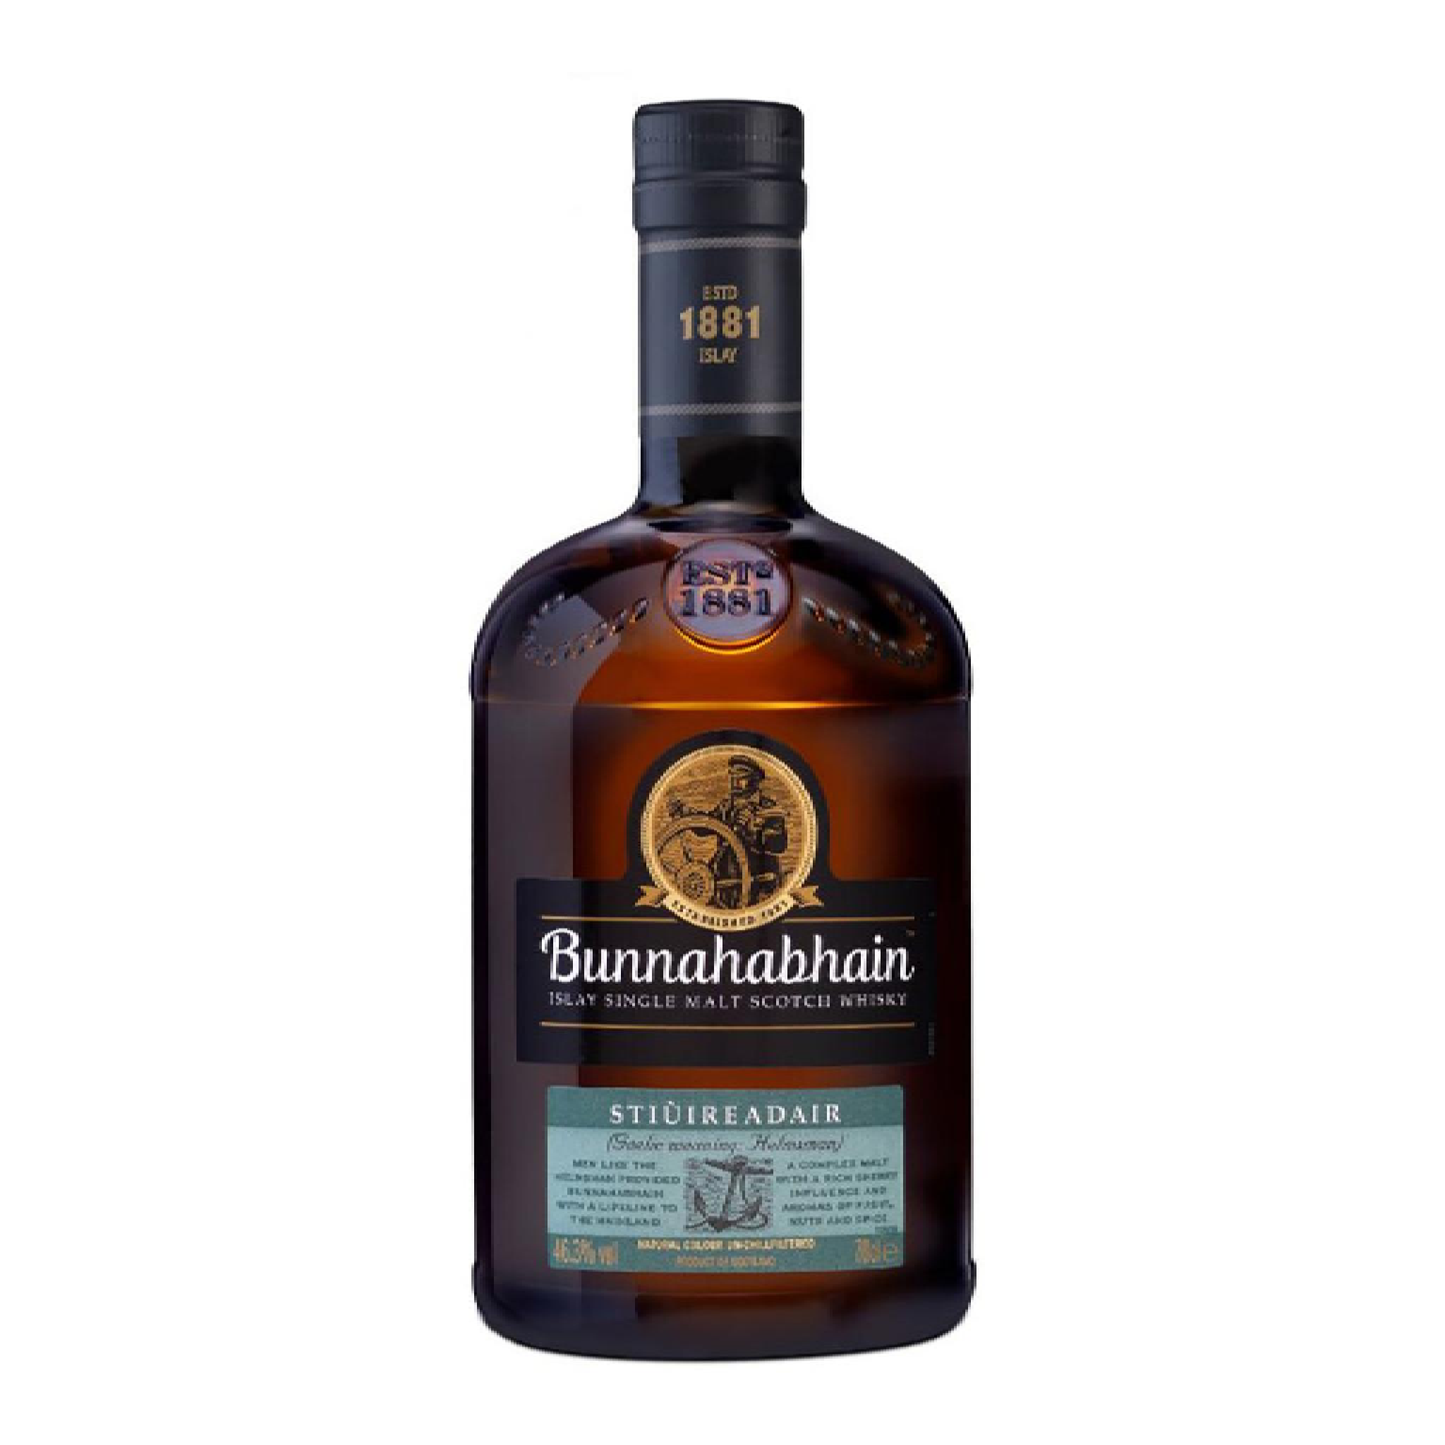 Bunnahabhain Single Malt Scotch Stiuireadair - Liquor Geeks